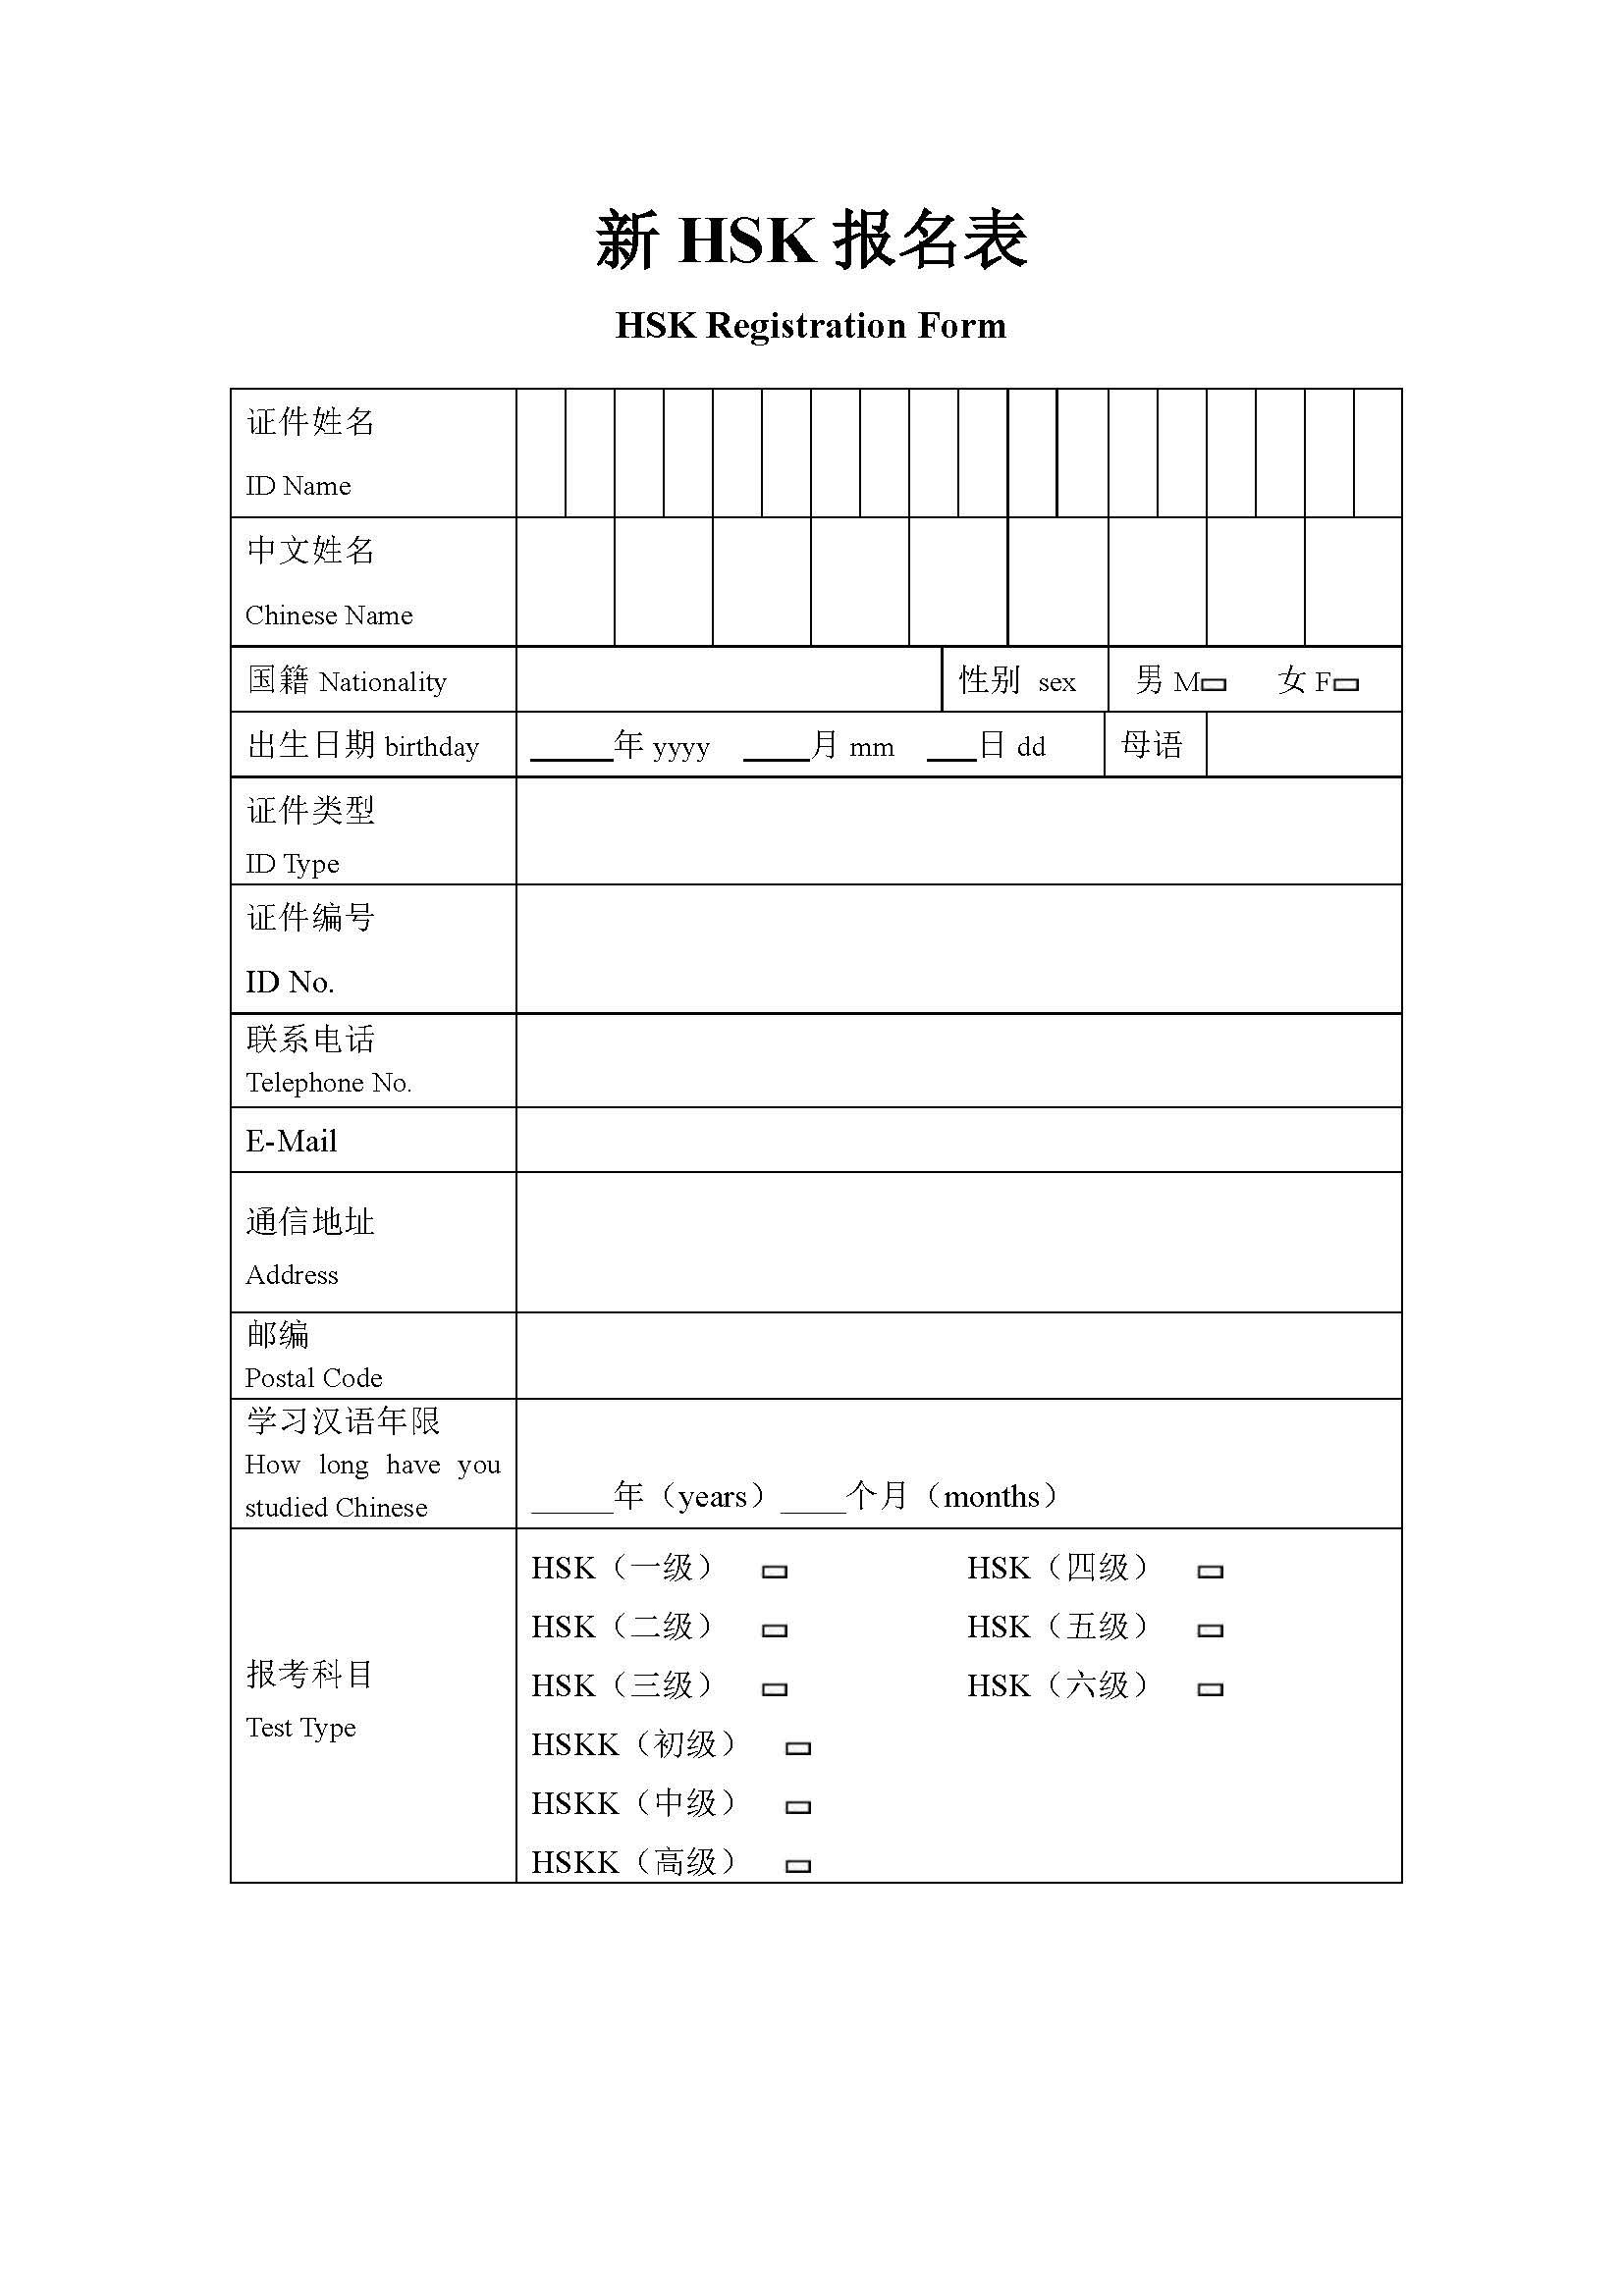 HSK Exam Registration Form main image